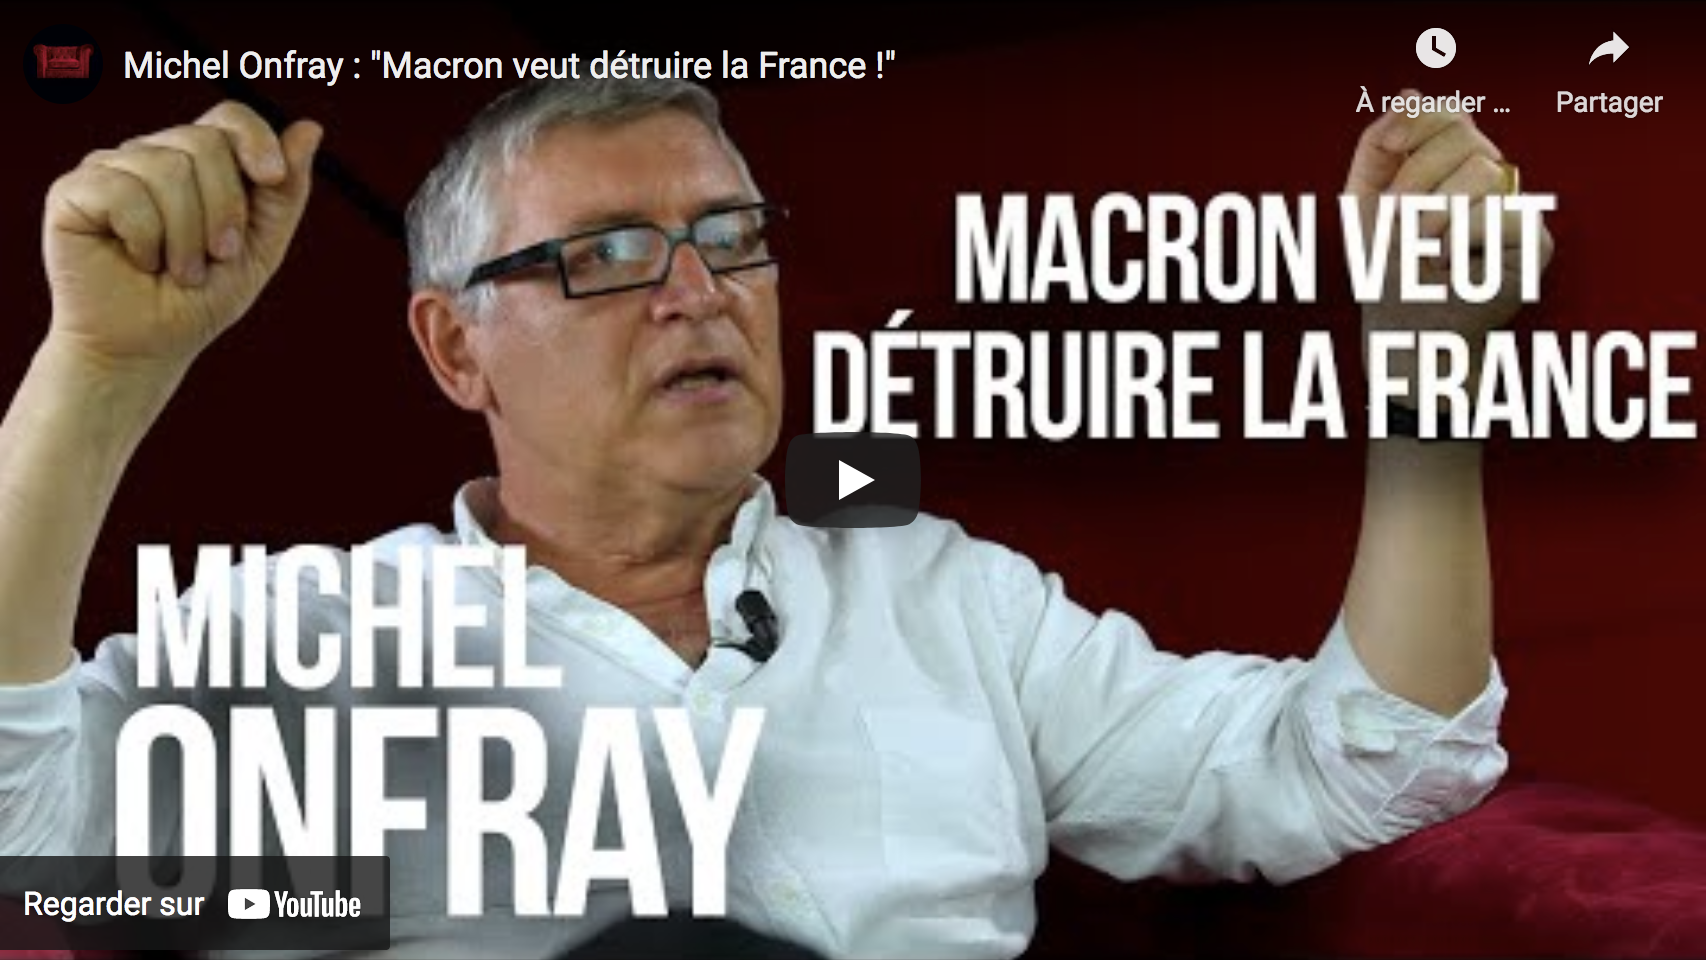 Michel Onfray : “Emmanuel Macron veut détruire la France !” (VIDÉO)